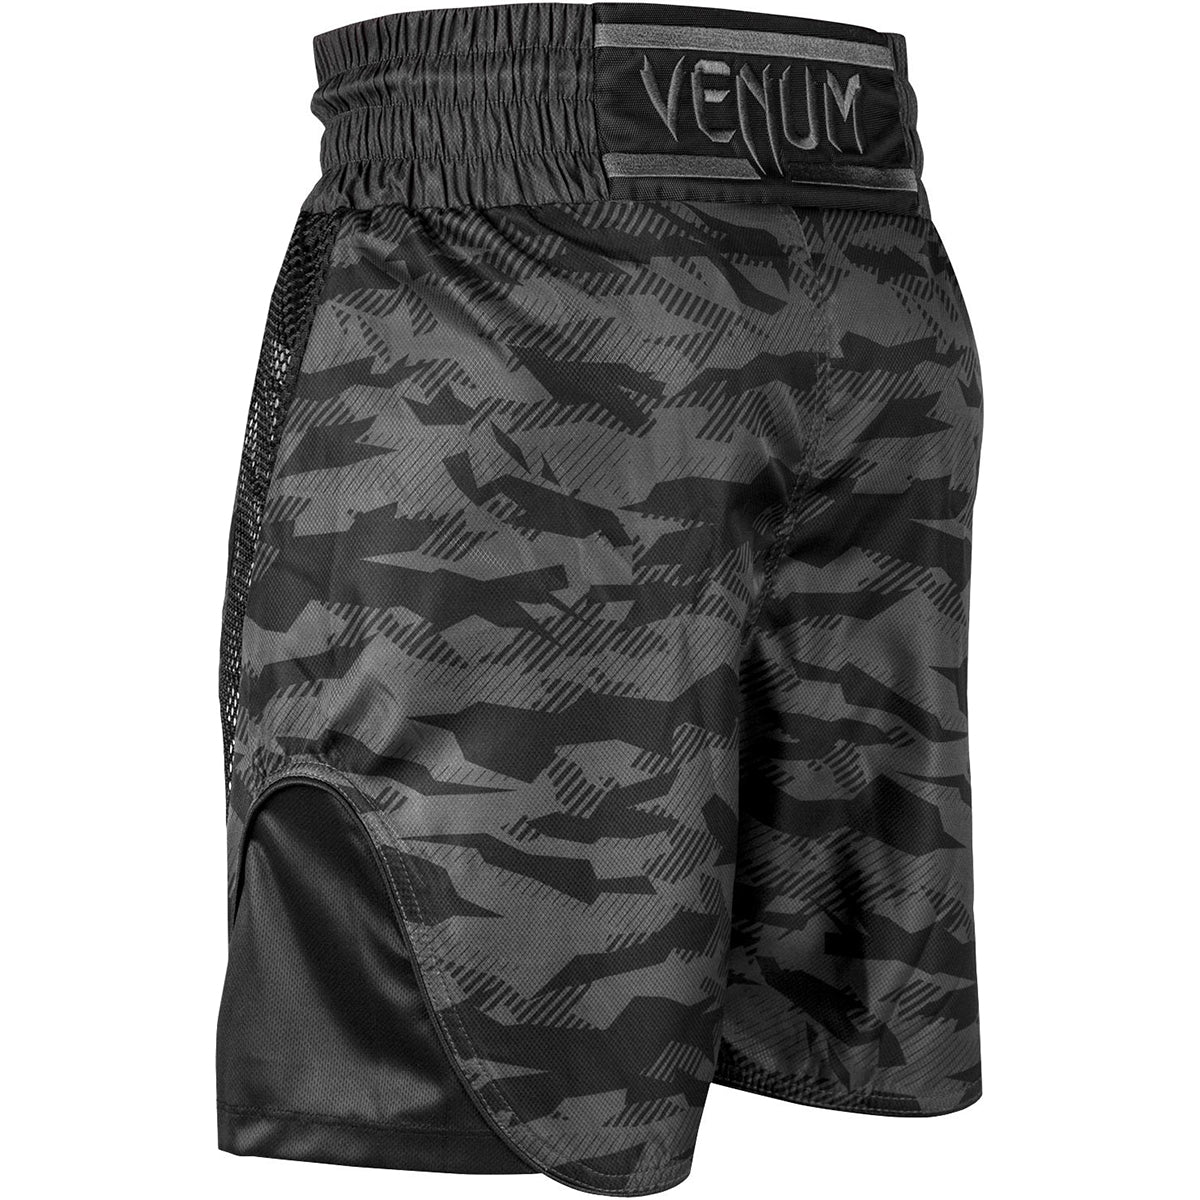 Venum Elite Boxing Shorts - Urban Camo/Black Venum